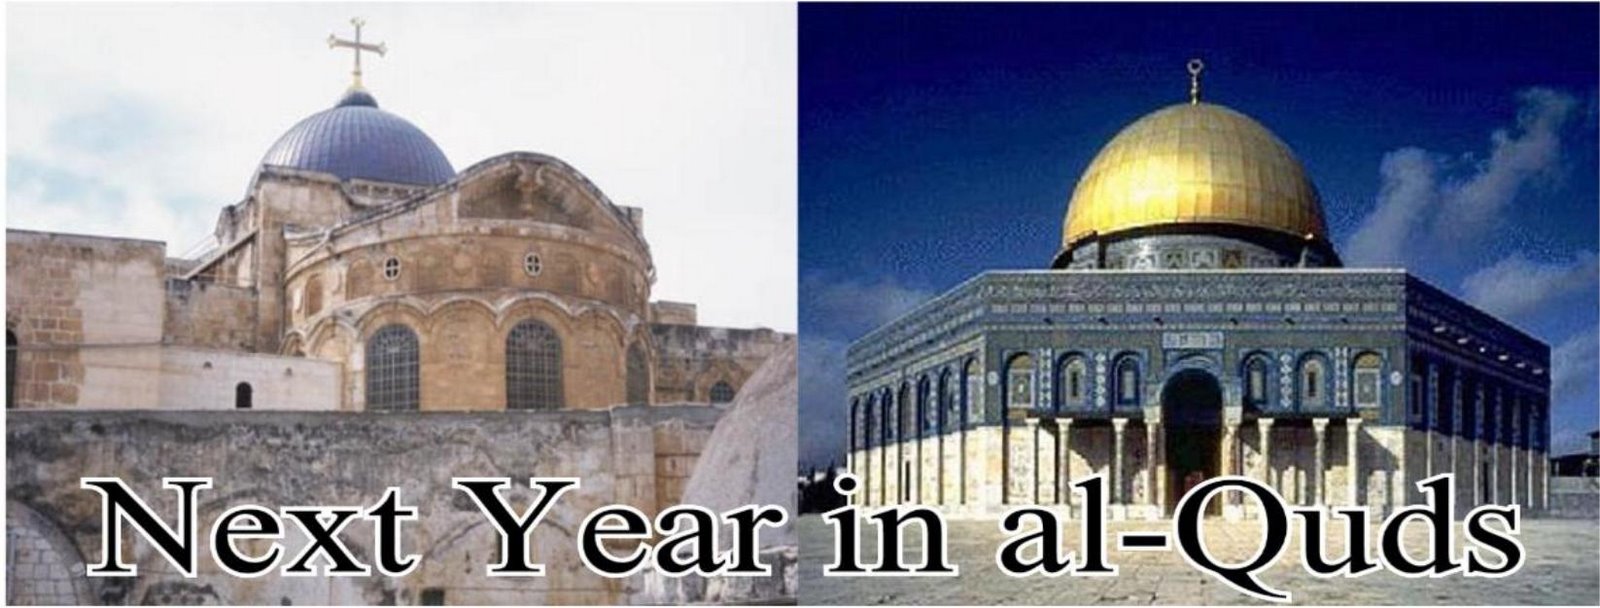 Next Year in al-Quds